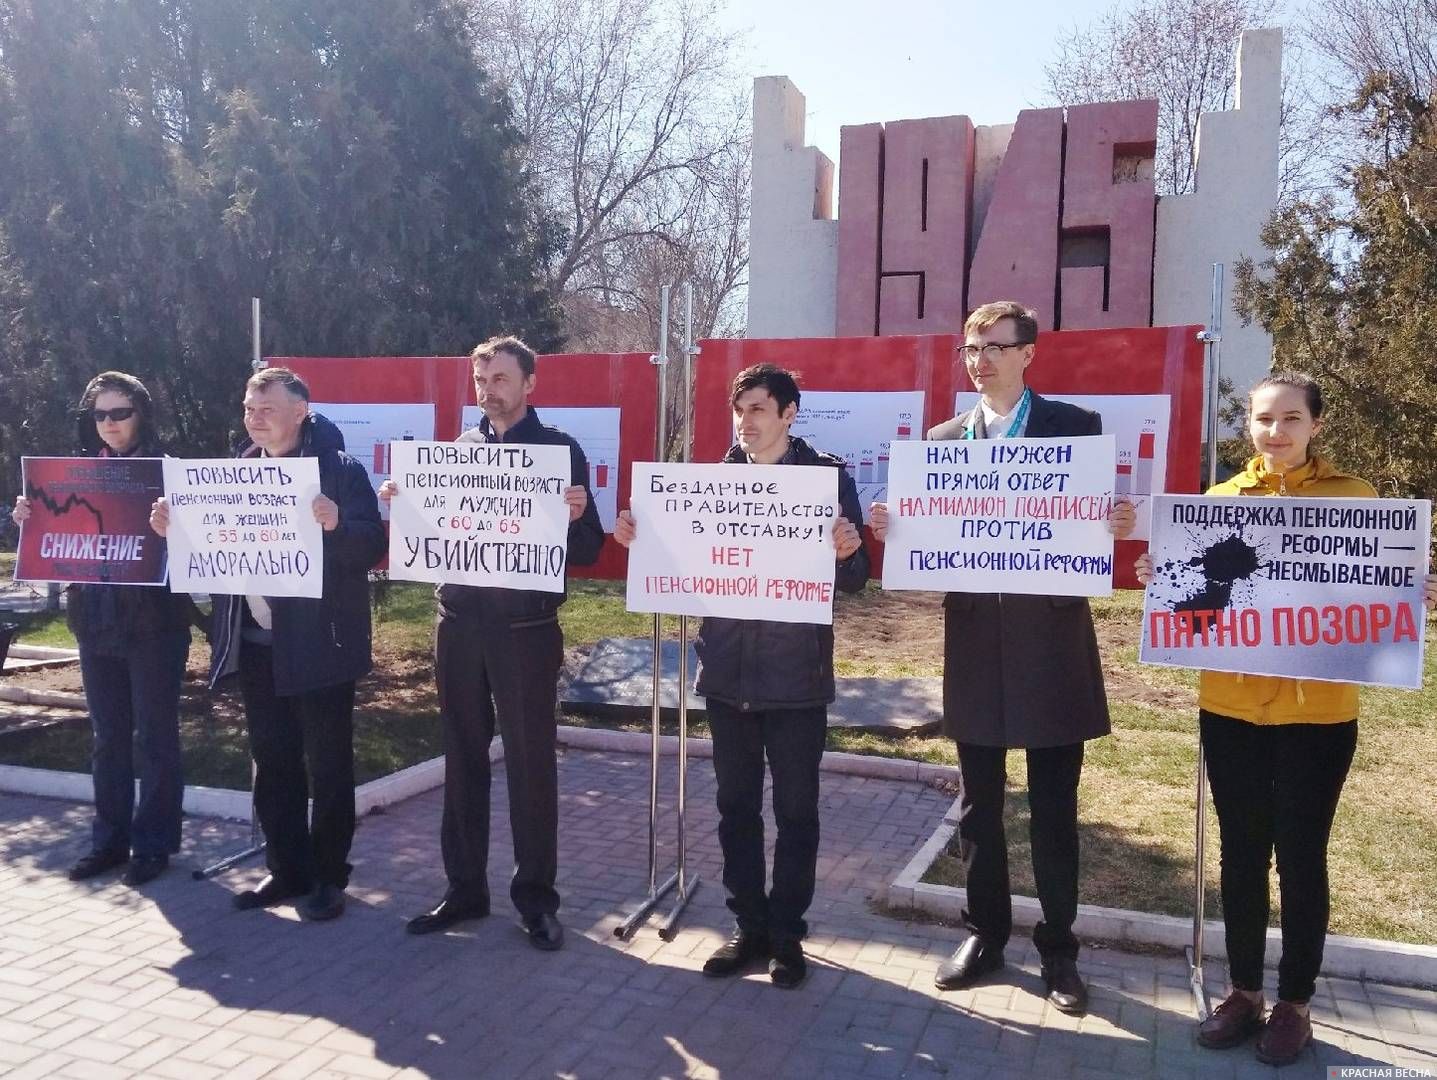 Пикет против пенсионной реформы в Астрахани. 31.03.2018